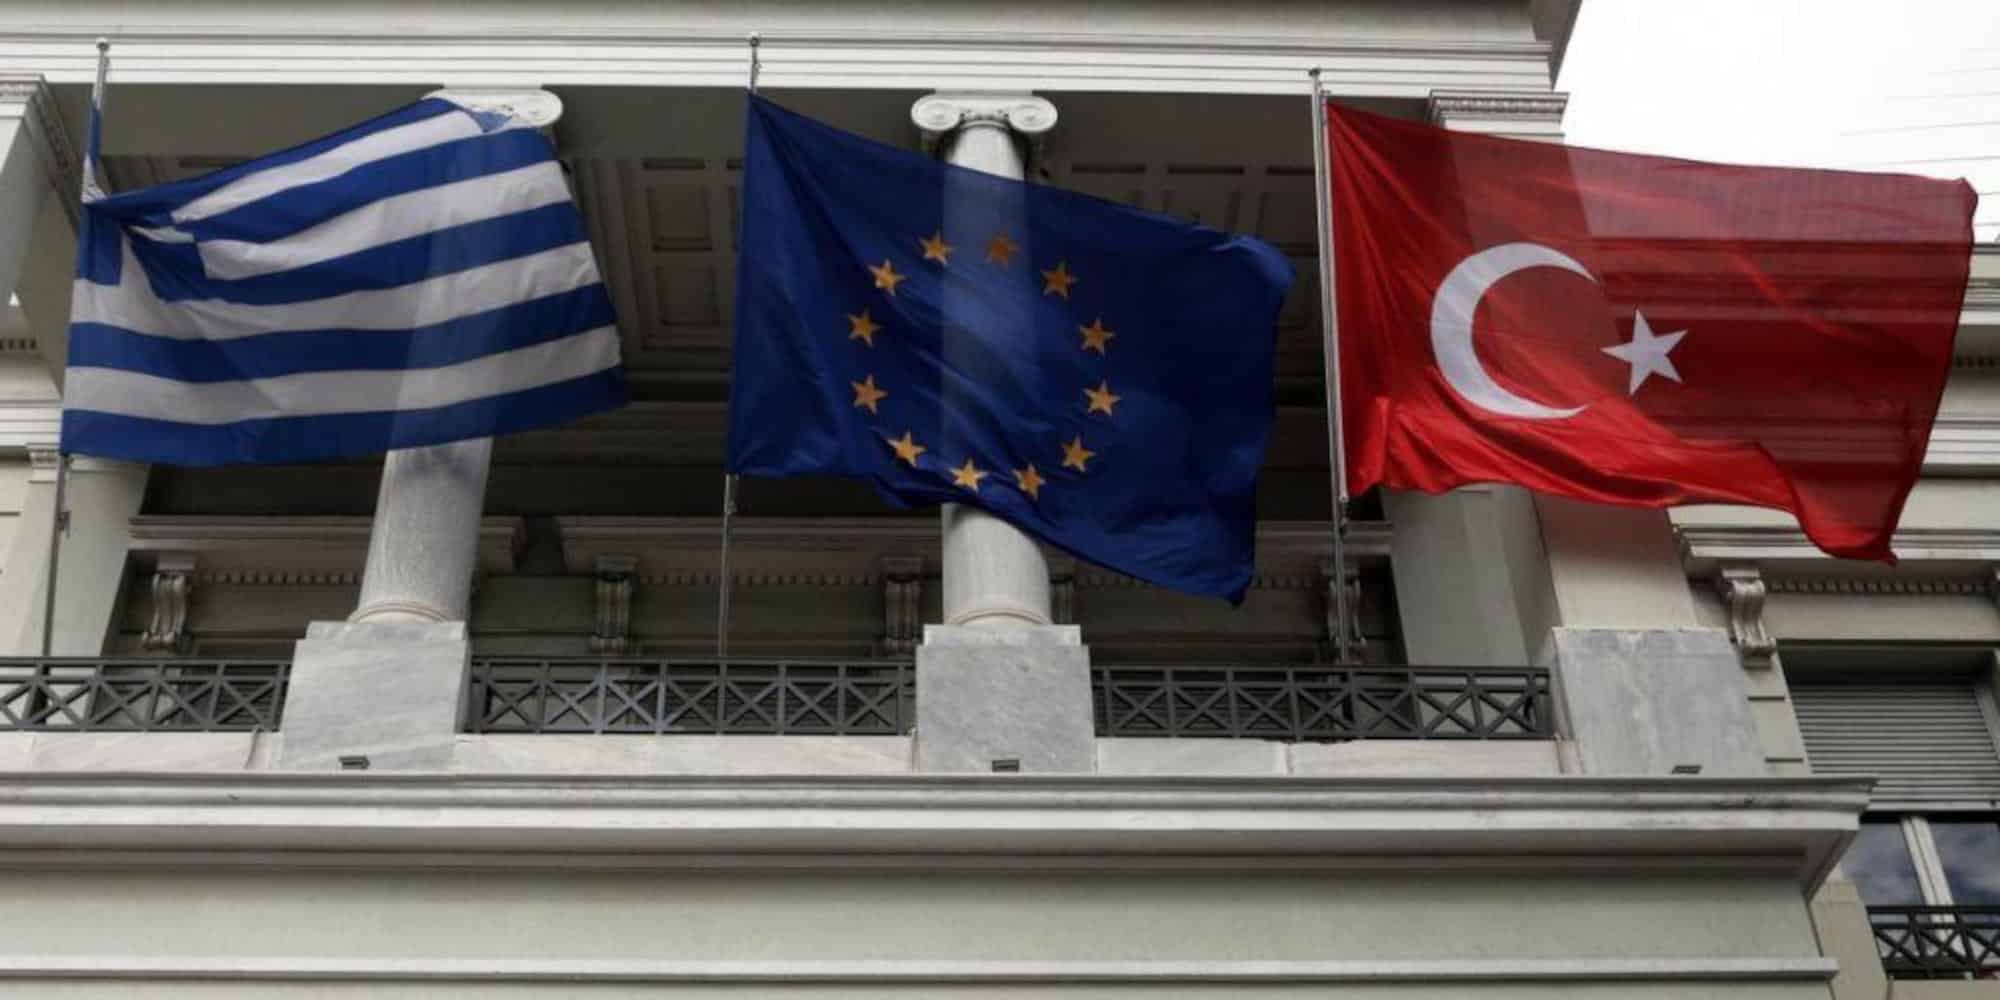 Νέο αυστηρό μήνυμα από την Ευρωπαϊκή Ένωση στην Τουρκία: «Σταματήστε τις απειλές - Σεβαστείτε την κυριαρχία της Ελλάδας»